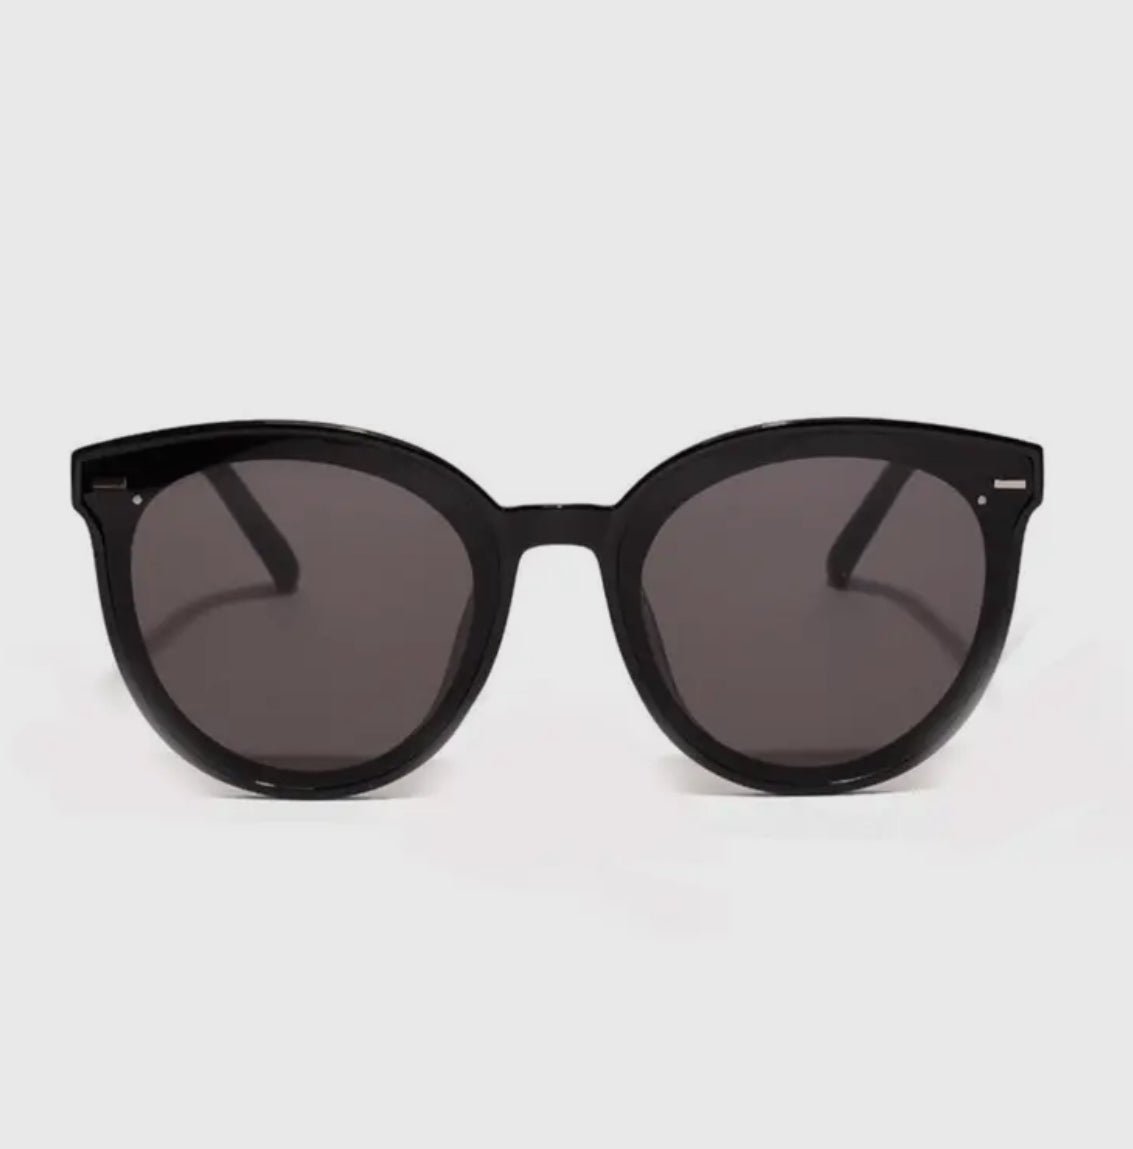 JORDIE Sunglasses - Black - Blue Sky Fashions & Lingerie